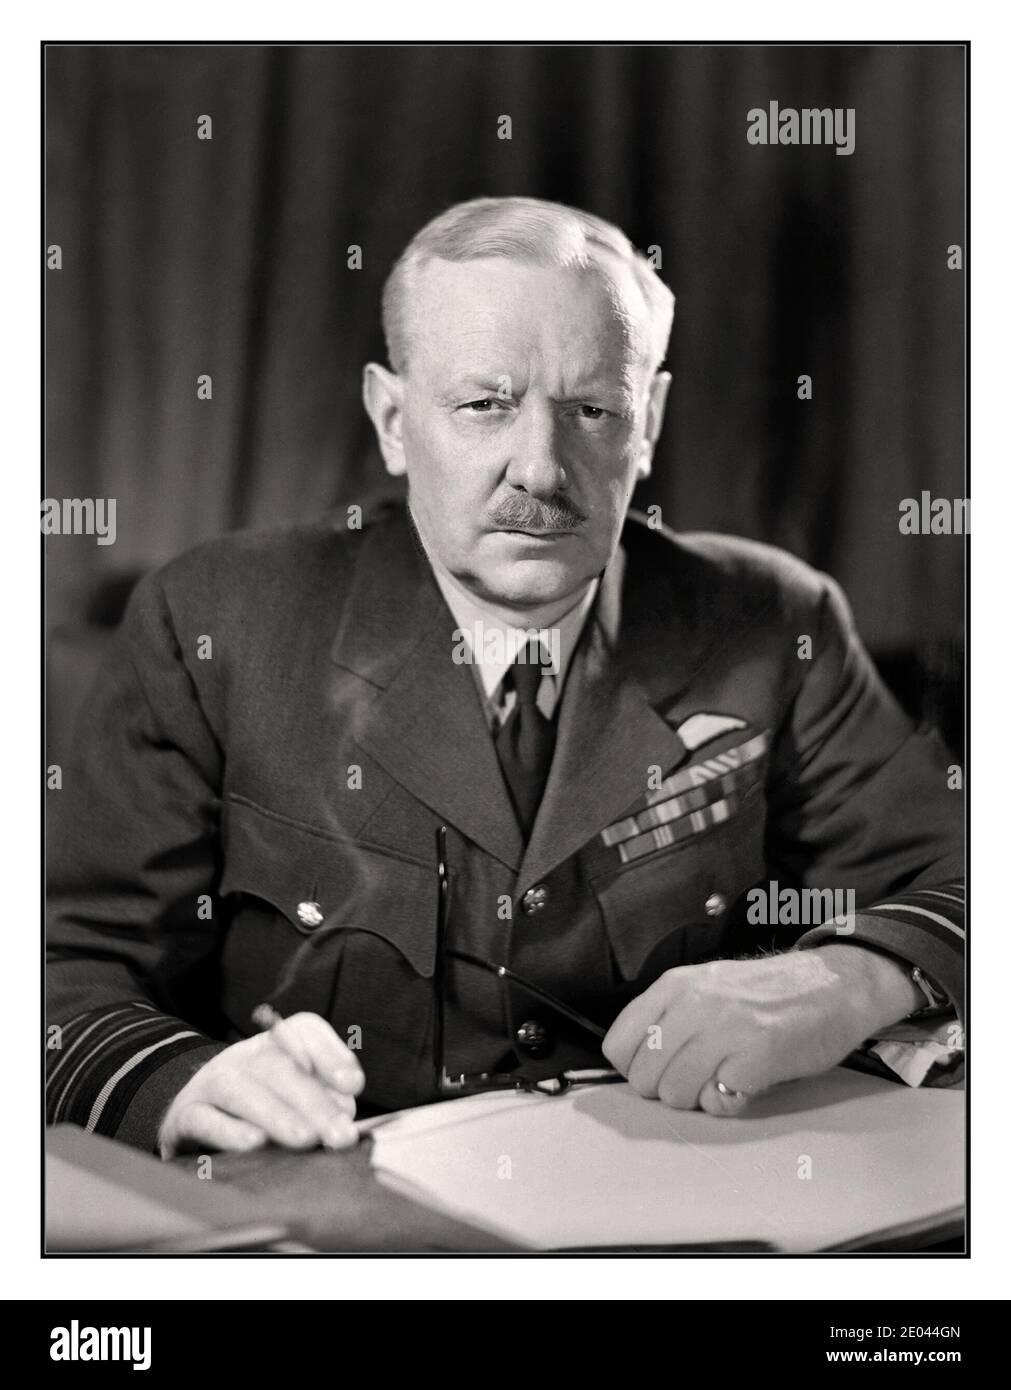 BOMBER HARRIS ARCHIVO Retrato Mariscal Jefe de Aire Sir Arthur Harris, Comandante en Jefe del comando de Bomber de la Fuerza Aérea Real, apodado ‘Bomber Harris” sentado en su escritorio, fumando un cigarrillo en el cuartel general del comando Bomber, High Wycombe. 24 de abril de 1944 Foto de stock